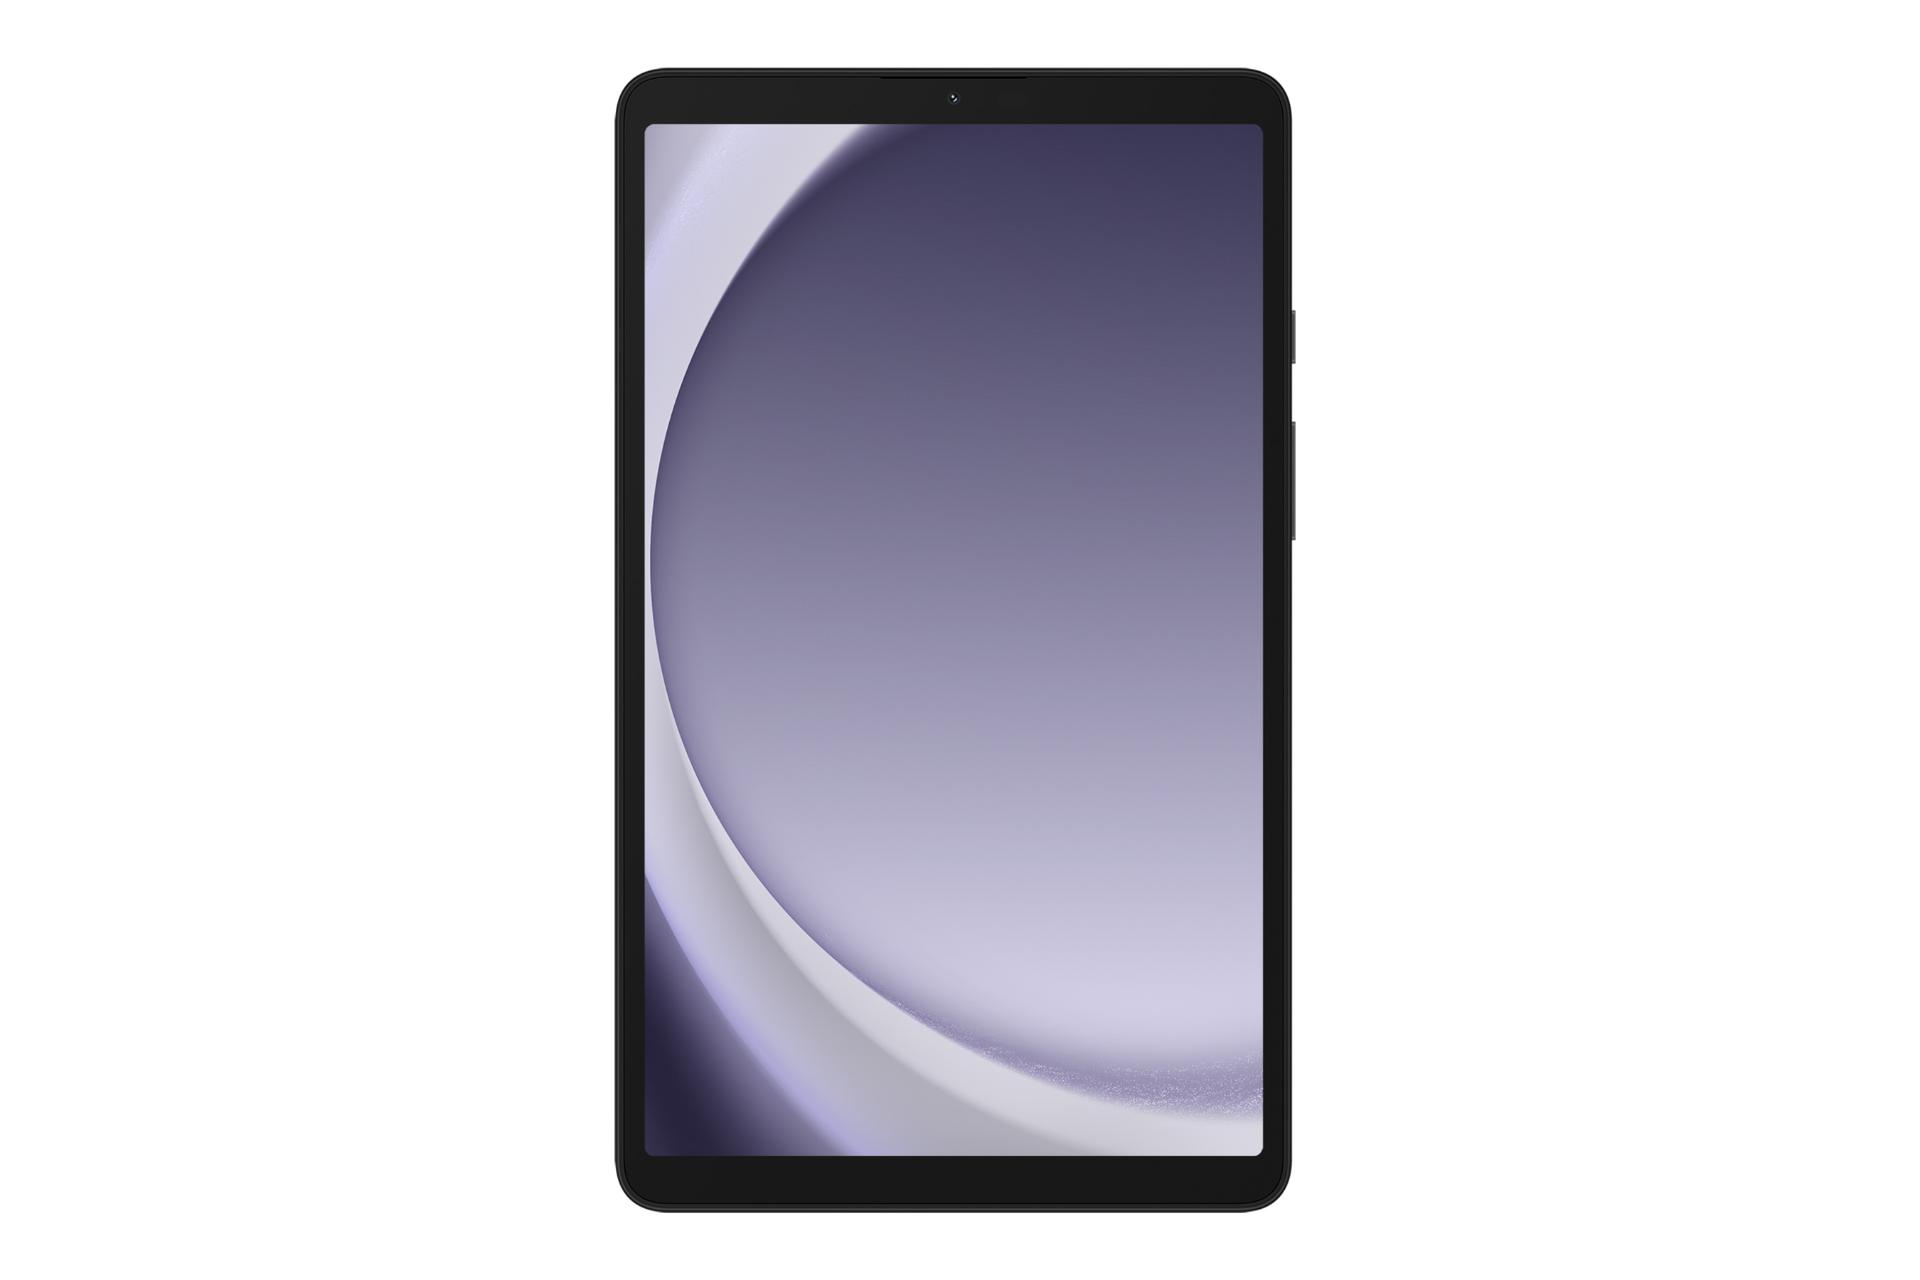 نمای روبه‌روی تبلت گلکسی تب A9 سامسونگ / Samsung Galaxy Tab A9 با نمایشگر روشن و نمایش دوربین سلفی و حاشیه های نمایشگر رنگ خاکستری